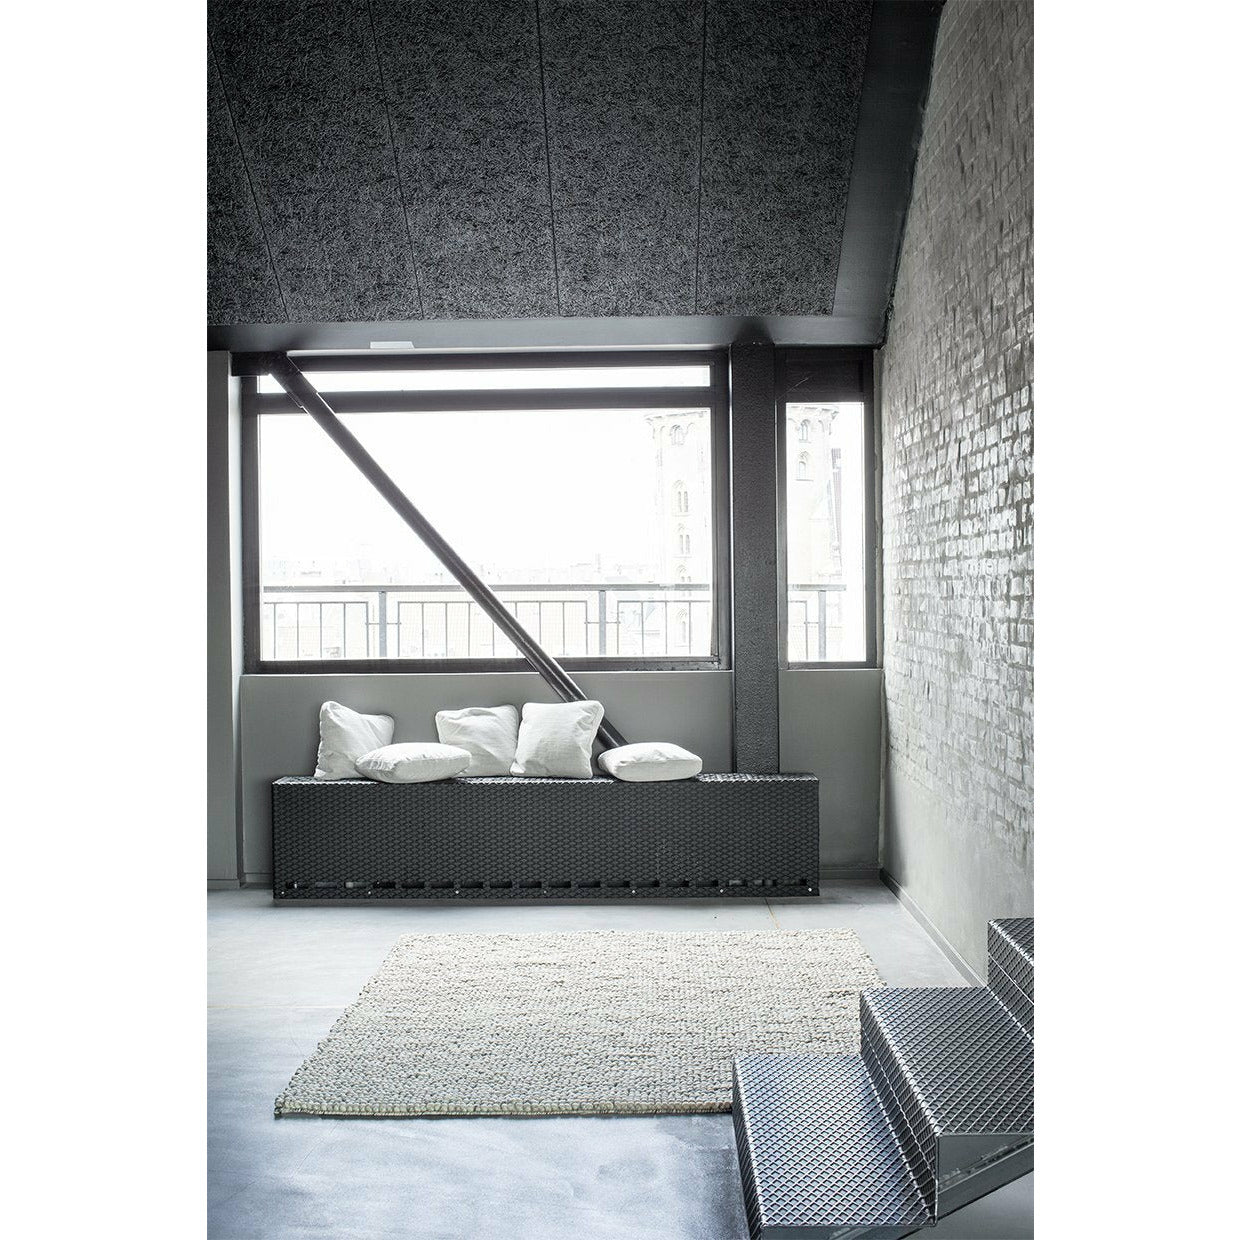 Massimo Bubblor mattan blandad grå, 200x300 cm